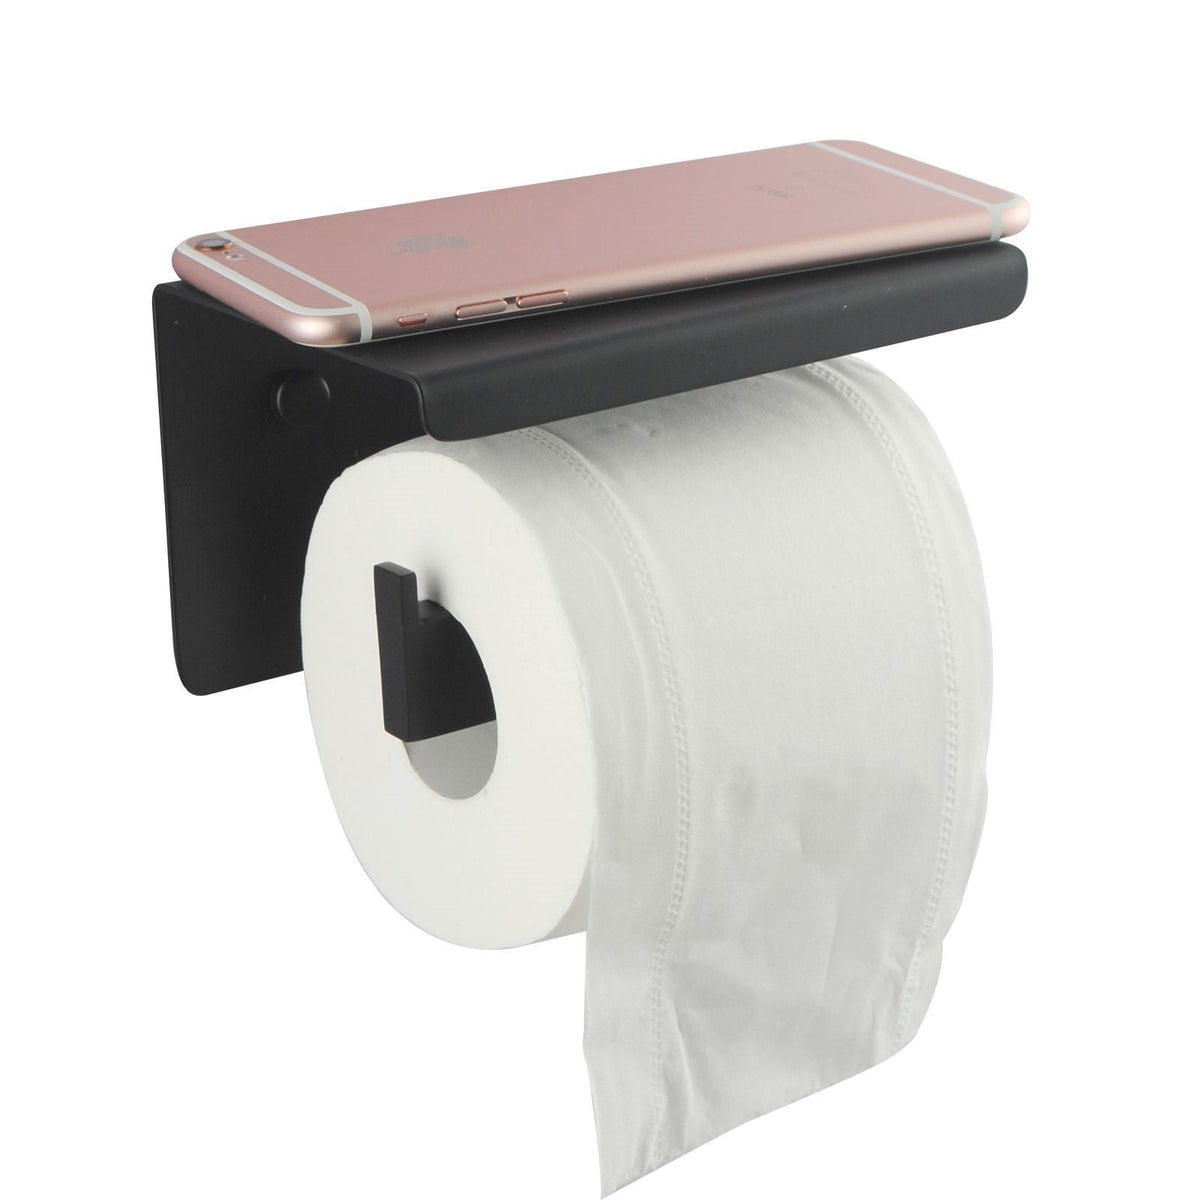 BLAZE Series Black Toilet Paper Holder